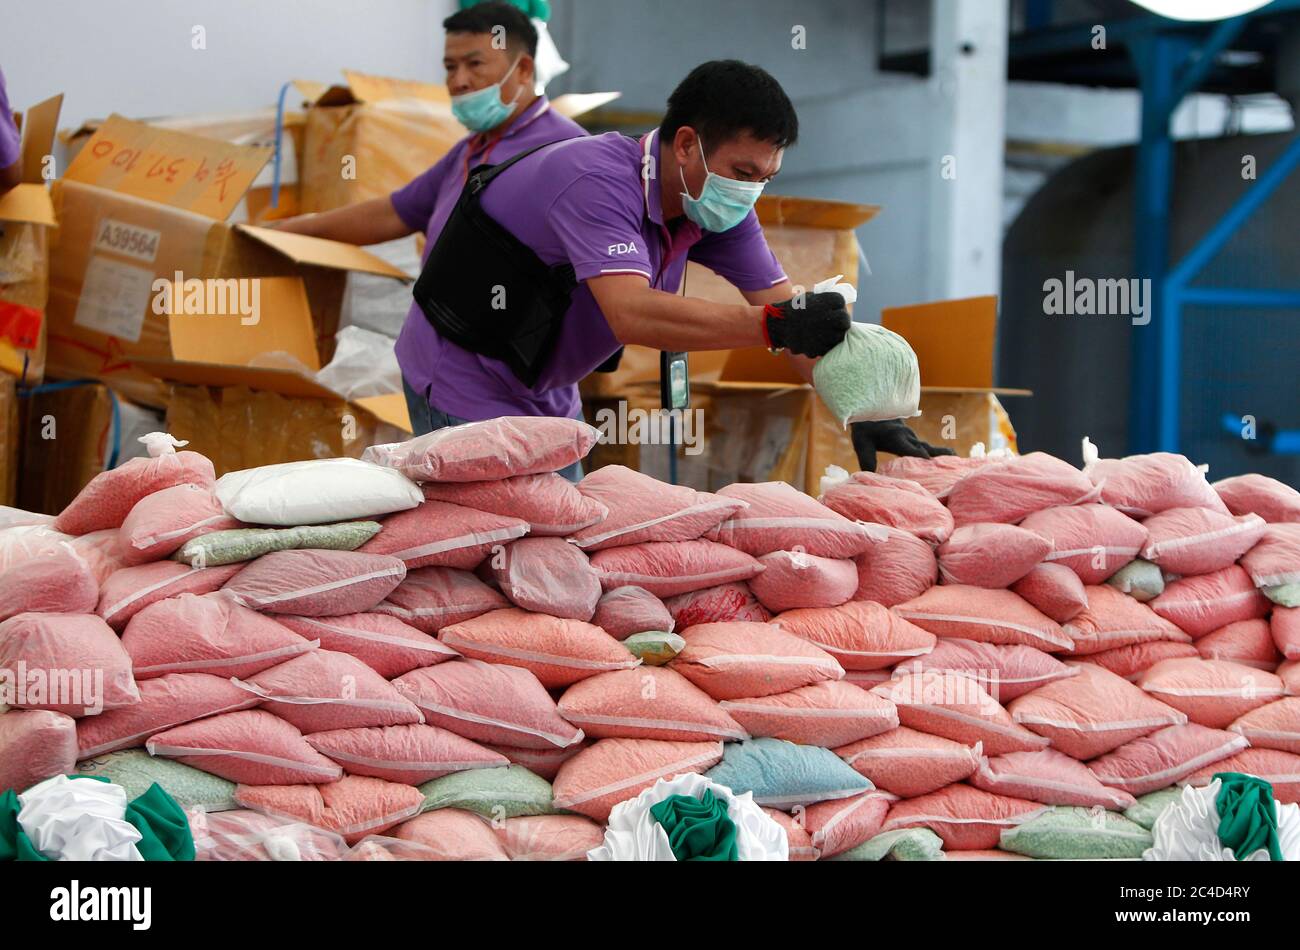 Un responsable thaïlandais des stupéfiants organise des sacs de pilules de méthamphétamine pendant la 50e cérémonie de destruction des stupéfiants confisqués pour marquer la Journée internationale contre l'abus et le trafic illicite des drogues.plus de 25,301 kg de drogues, y compris la méthamphétamine, la marijuana, l'héroïne et l'opium, d'une valeur de plus de 55,941 millions de baht, Ont été détruits au moment où le gouvernement thaïlandais a commencé sa campagne anti-drogue, selon le ministère thaïlandais de la Santé publique. Banque D'Images